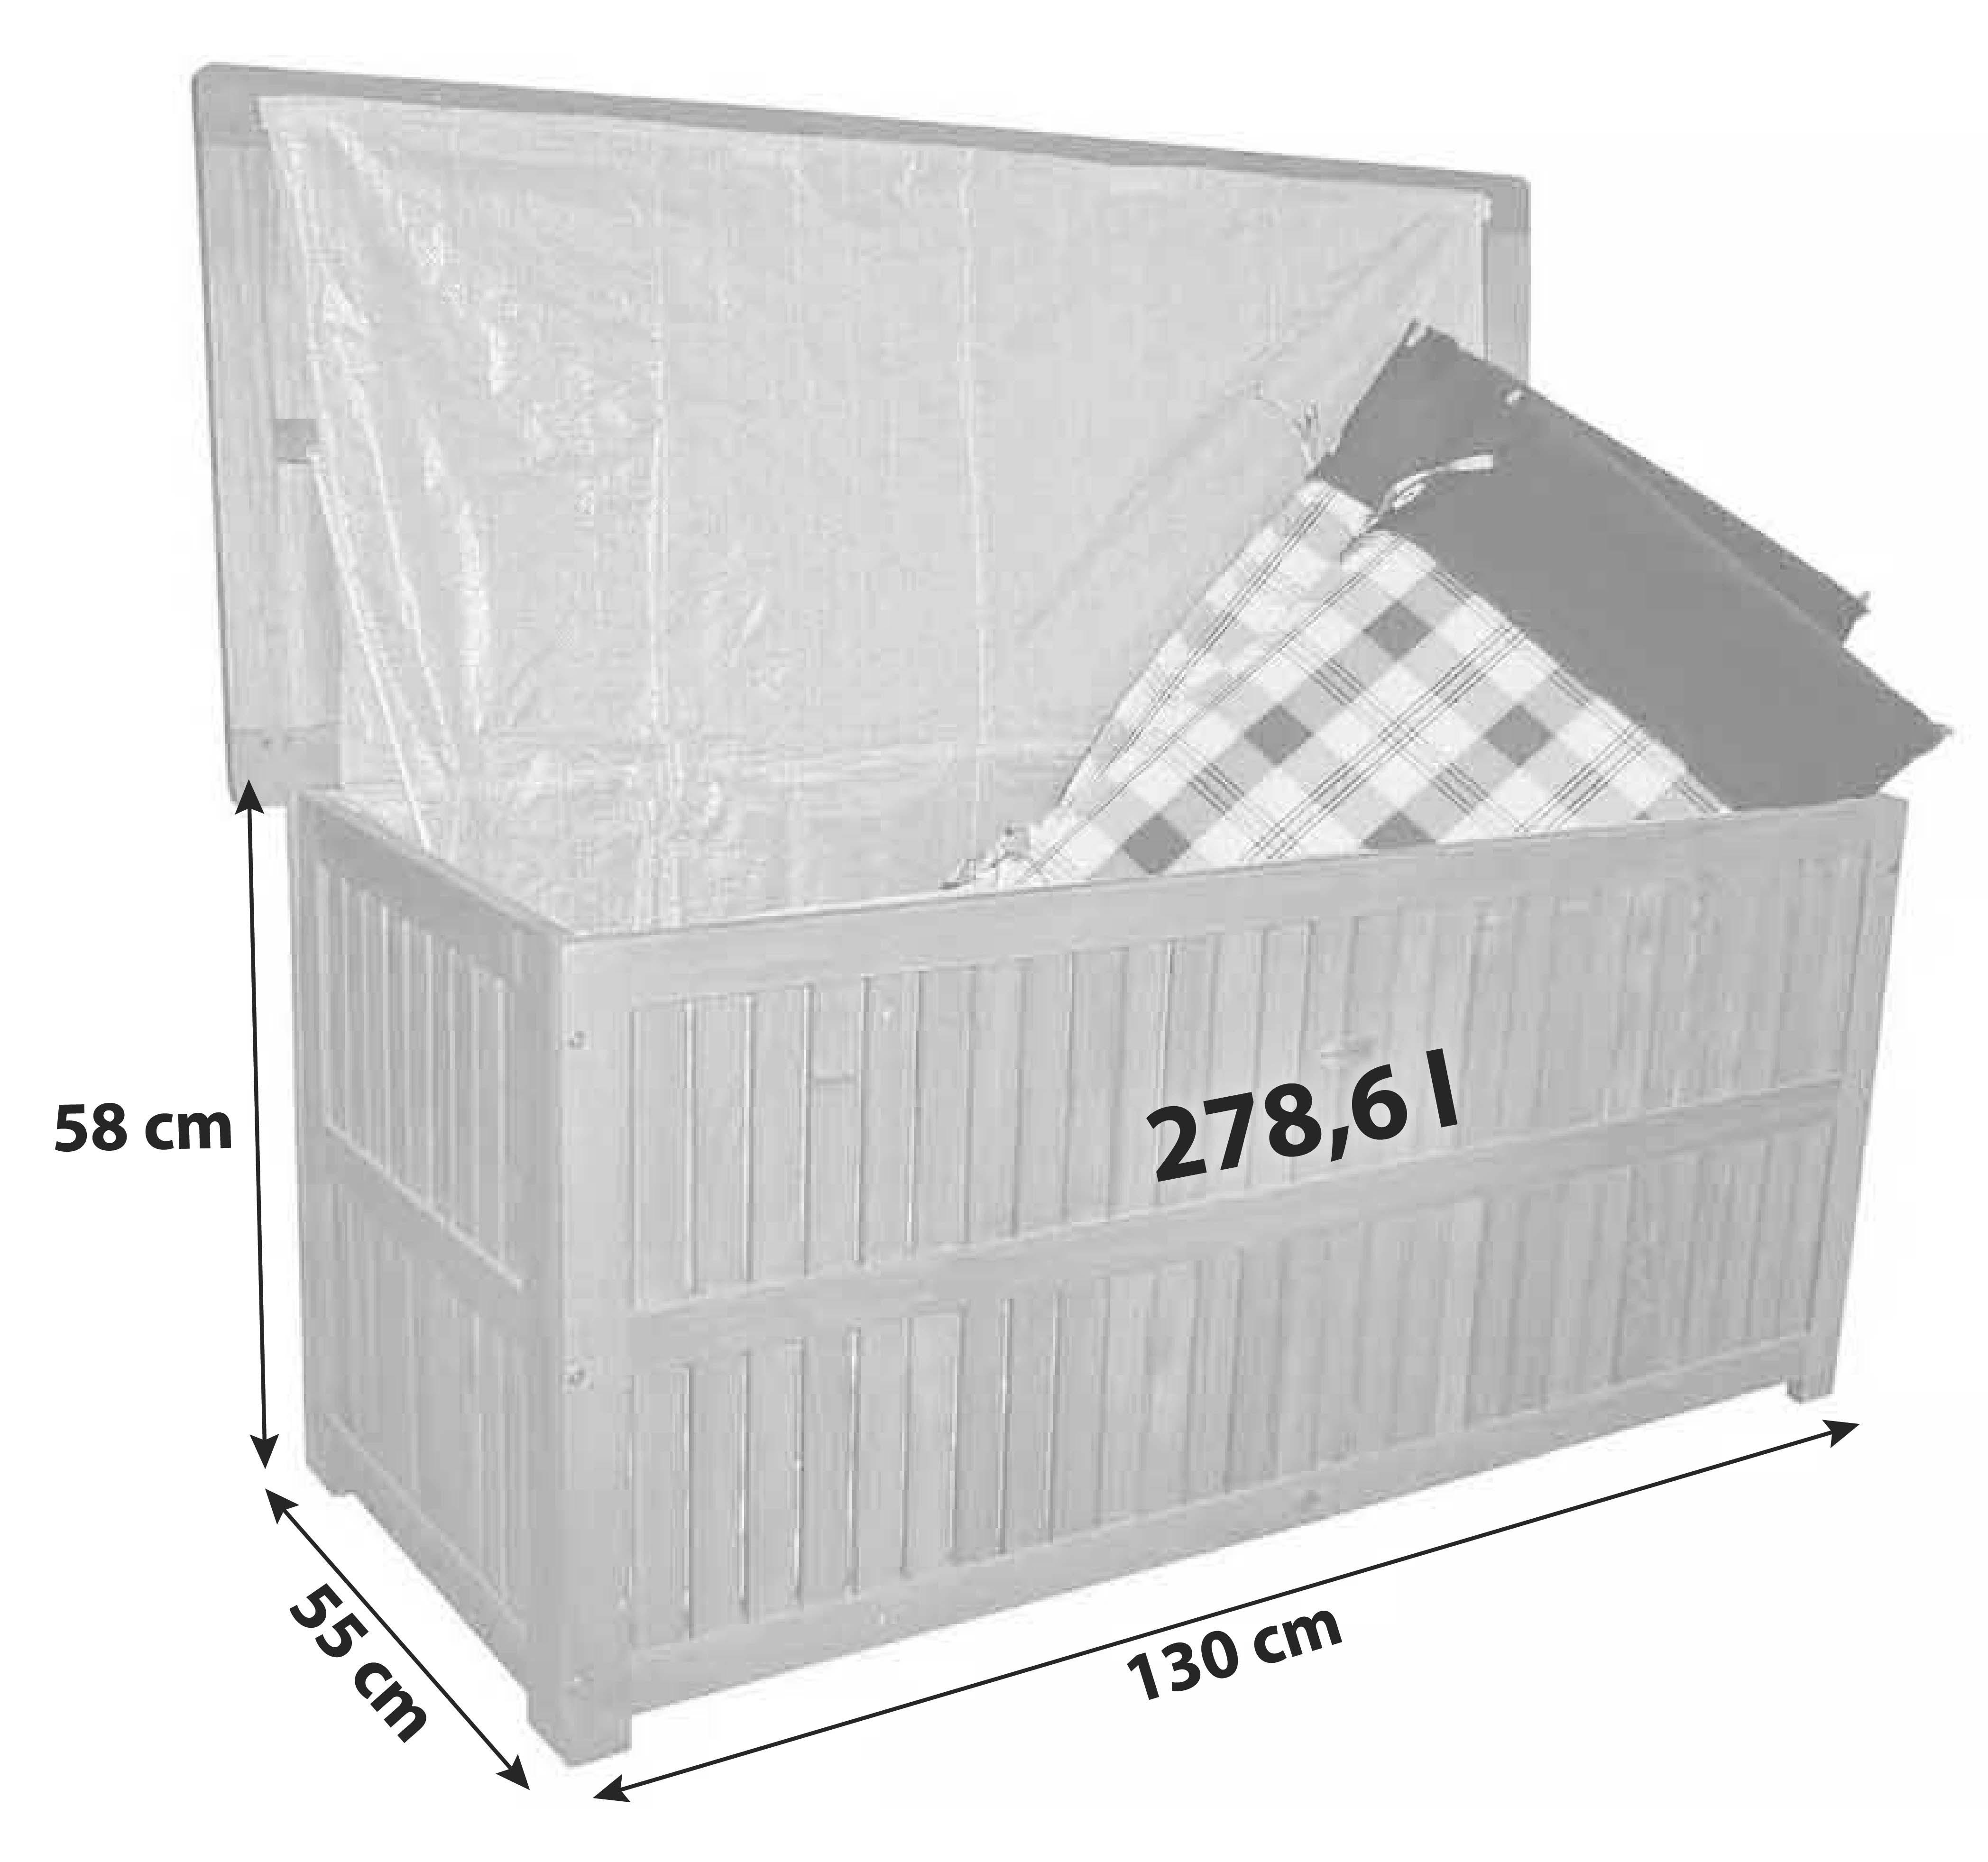 Kissenbox Plano 130x58x55 cm 278,6l Holz - Braun, Basics, Holz (130/58/55cm)